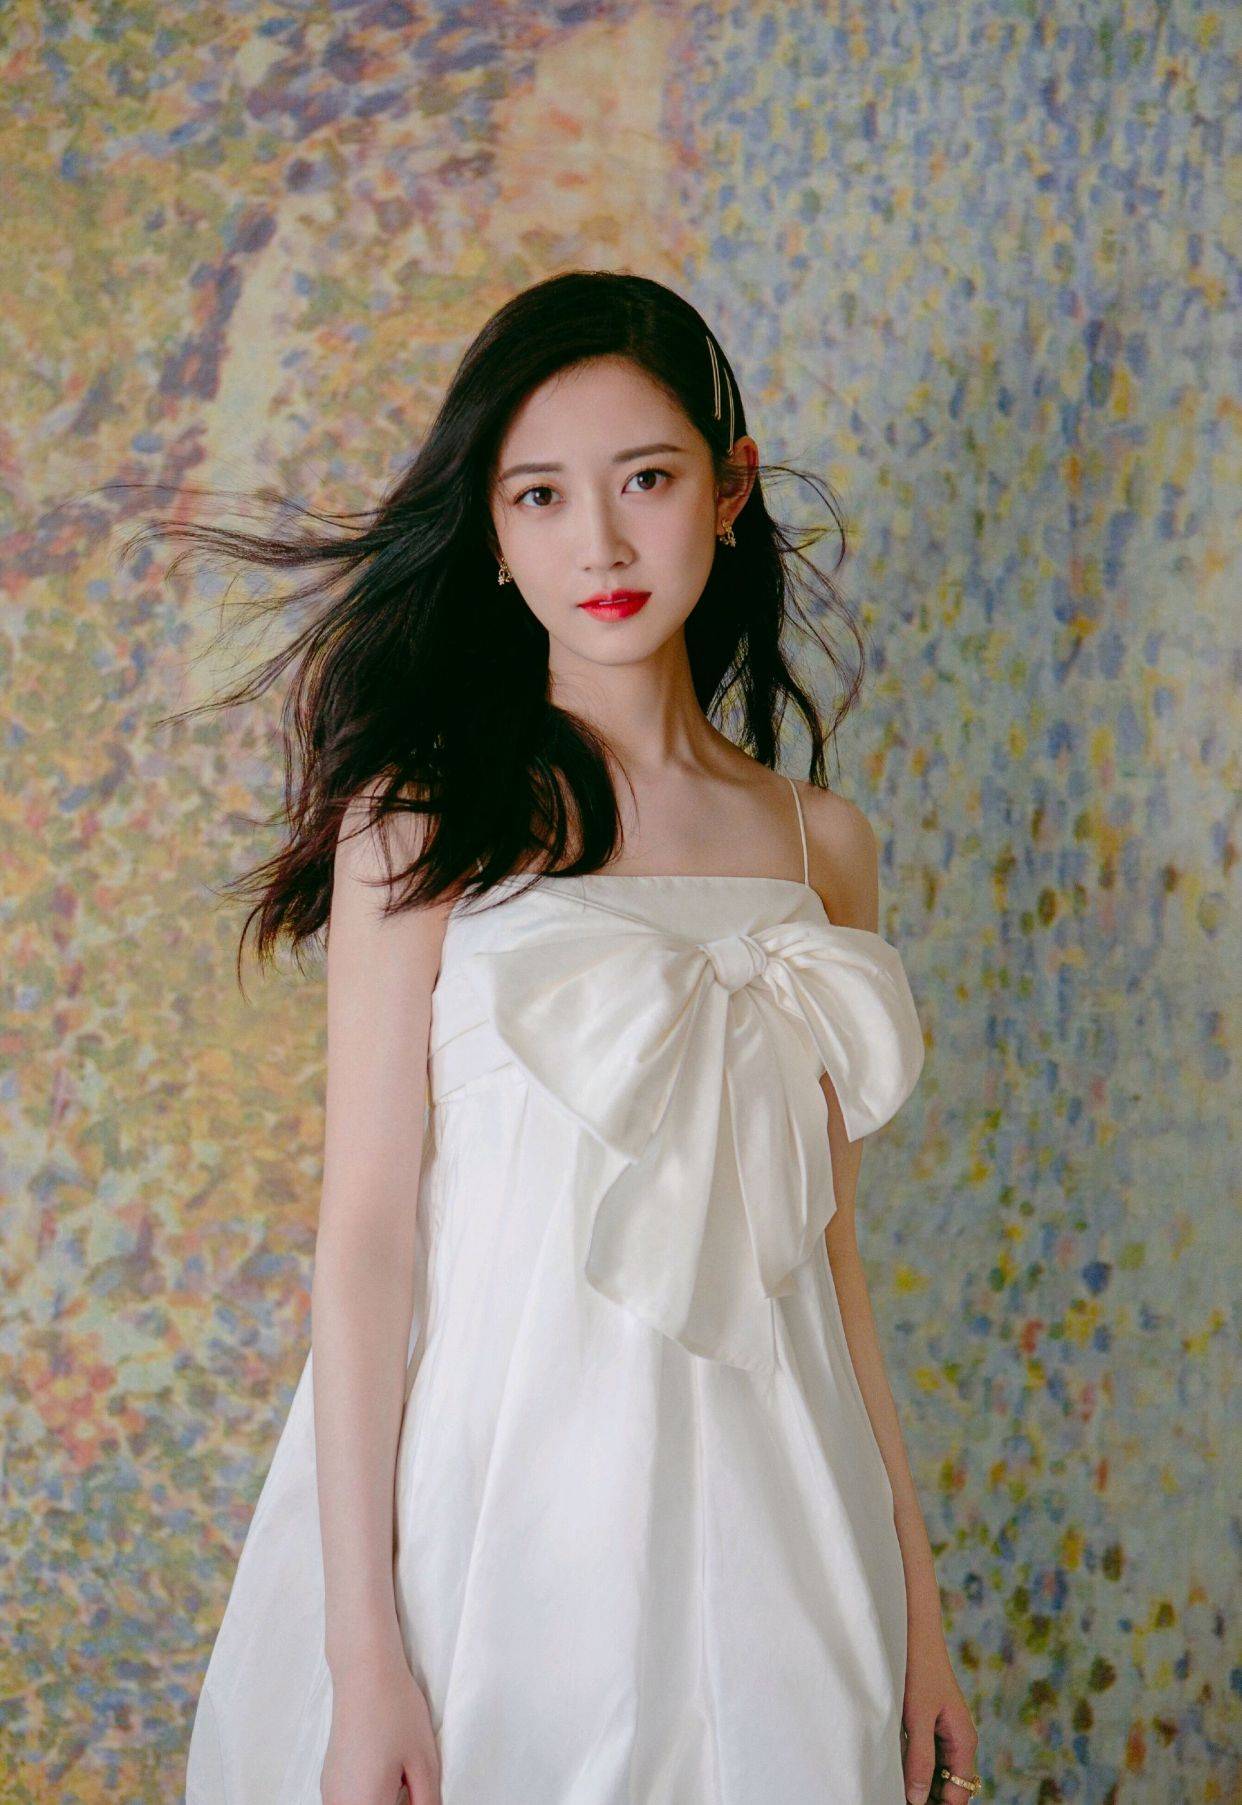 原创陈钰琪很有时尚表现力,穿白色连衣裙配金亮色高跟鞋,甜美又时髦